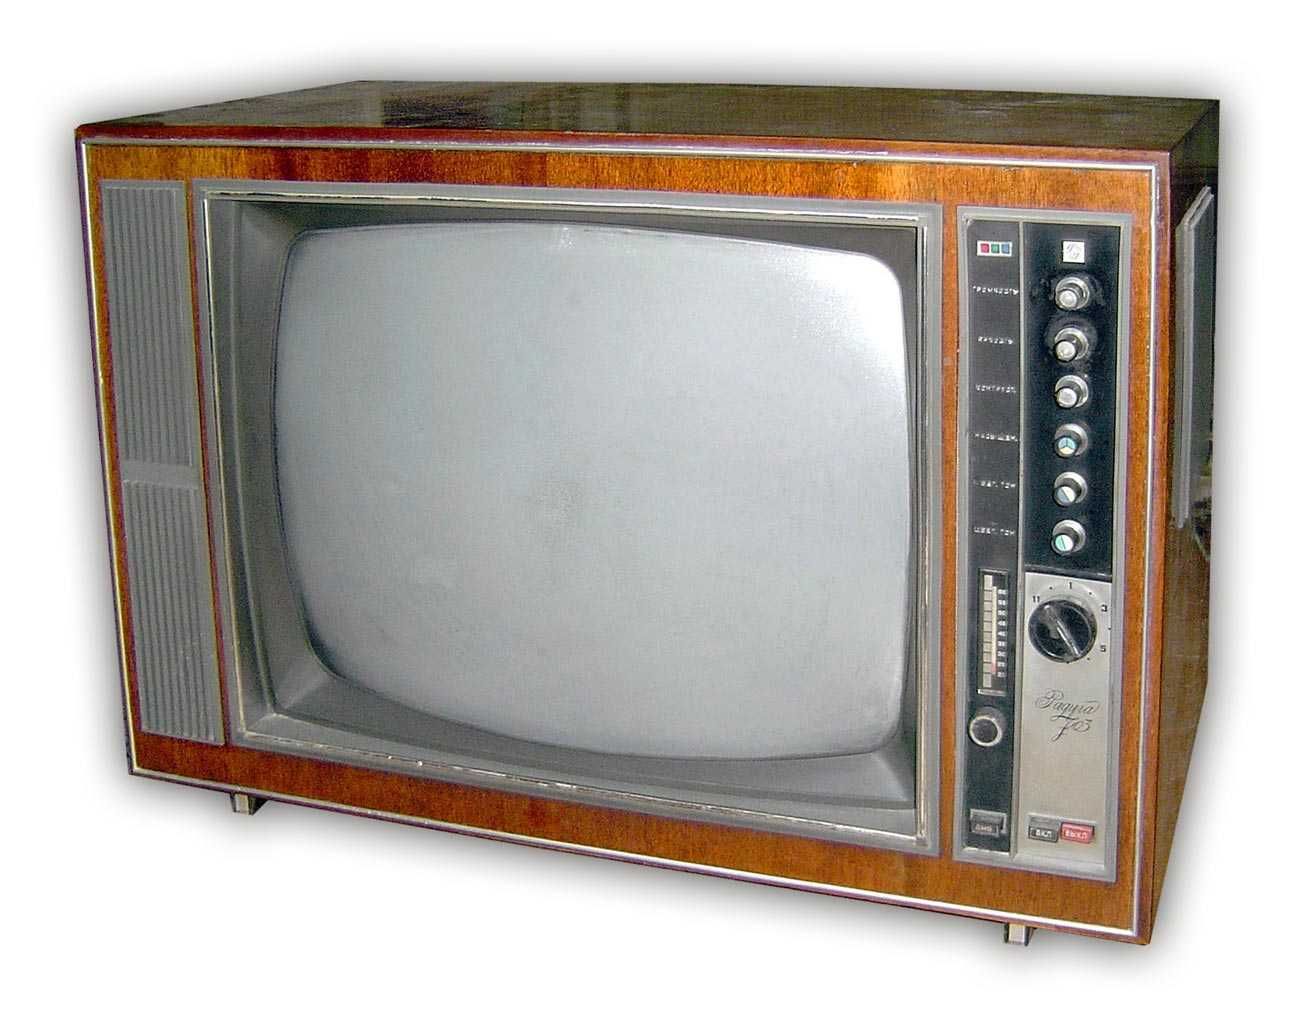 цветной телевизор Радуга 703, и радиола эстония 006 стерео, ссср 1973